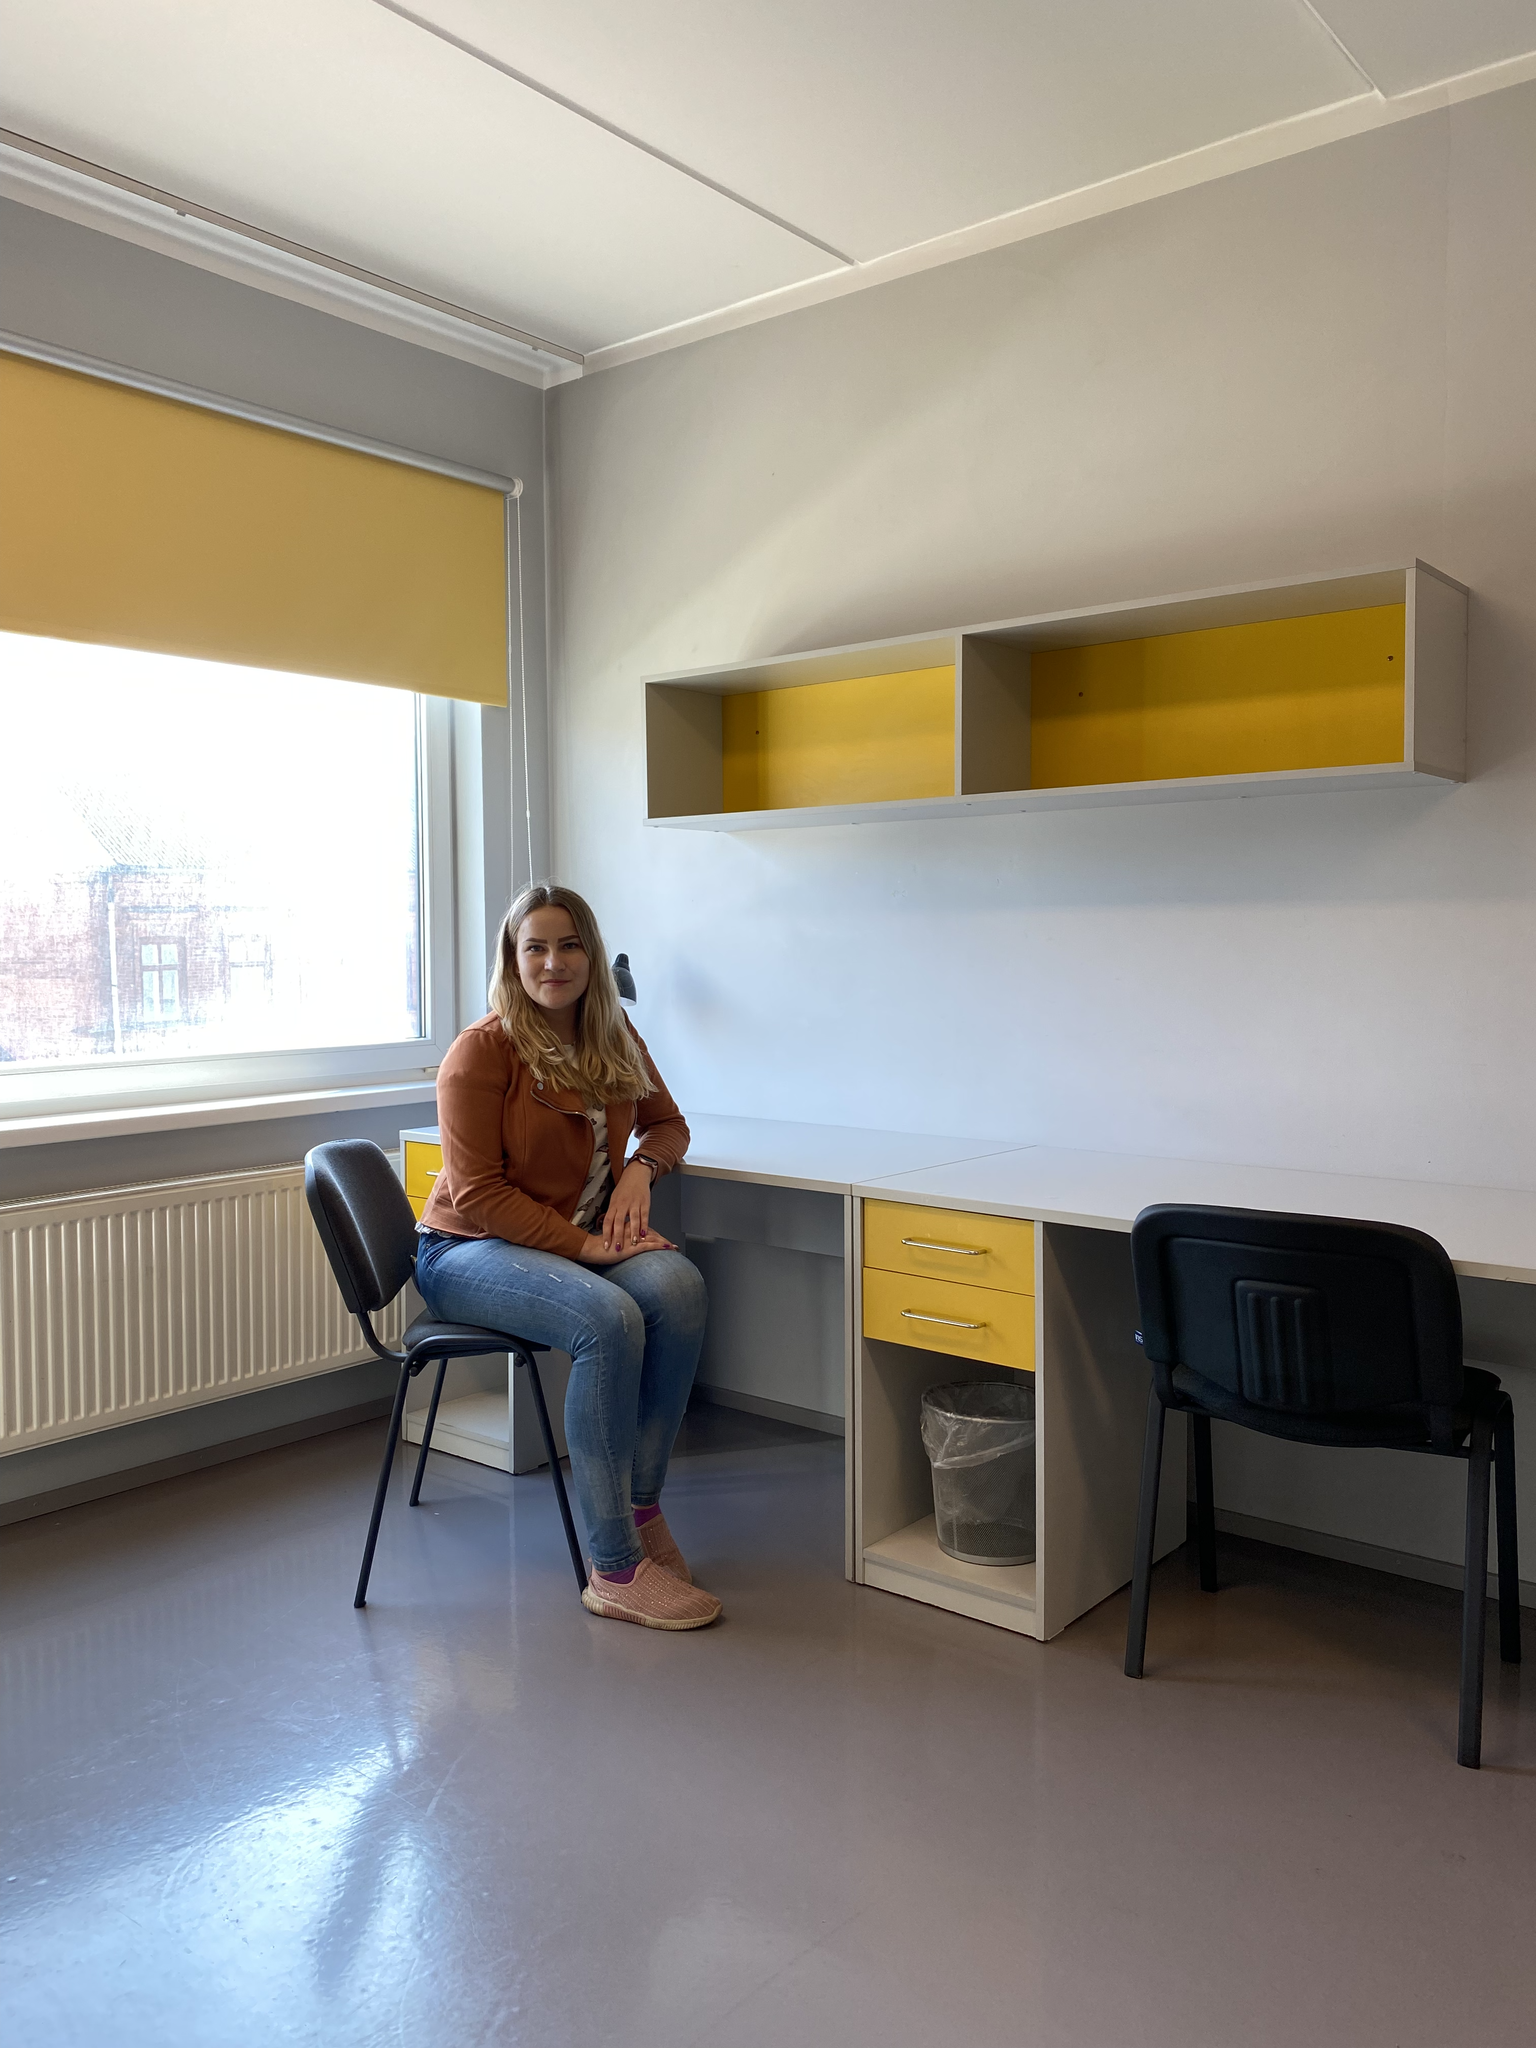 Tartu üliõpilasküla turundus- ja arendusspetsialist Liina Kuusik näitas Raatuse tänava ühiselamutuba, kus on kaks kirjutuslauda, kapid ja kaks voodit.